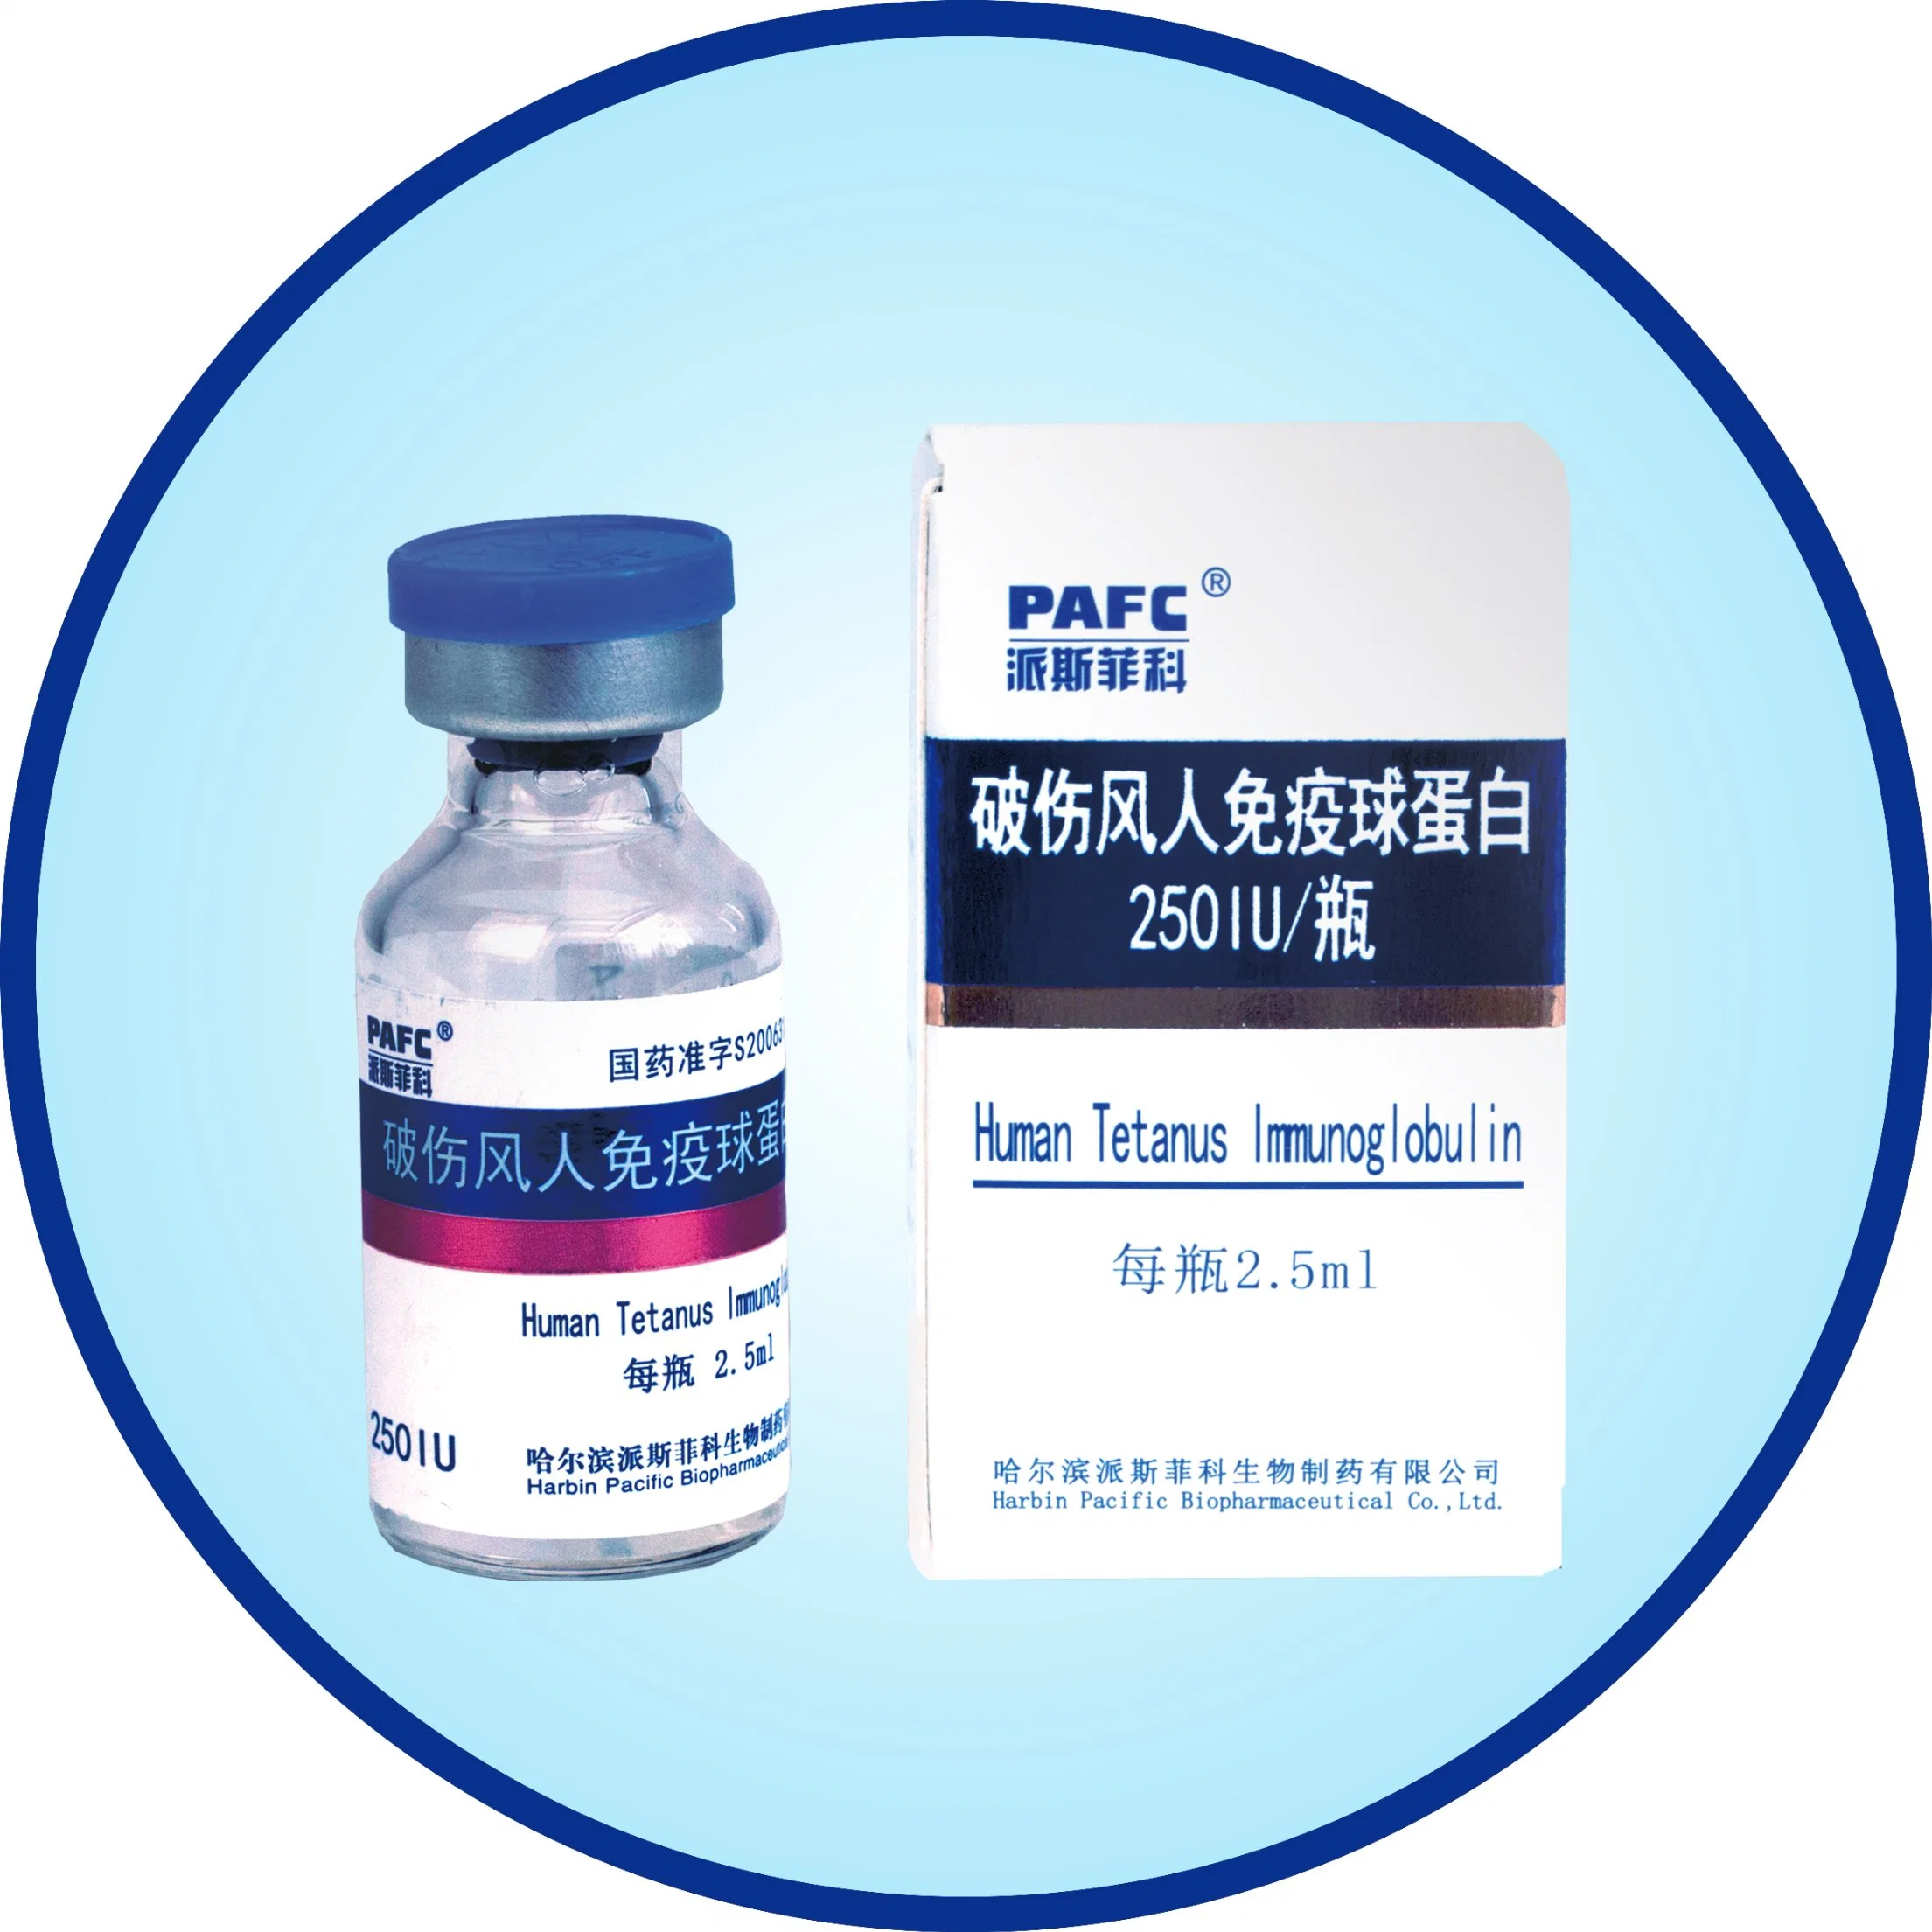 Biologisches Produkt von humanen Tetanus Immunglobulin (TIG) -Prävention und Heilung Von Tetanus